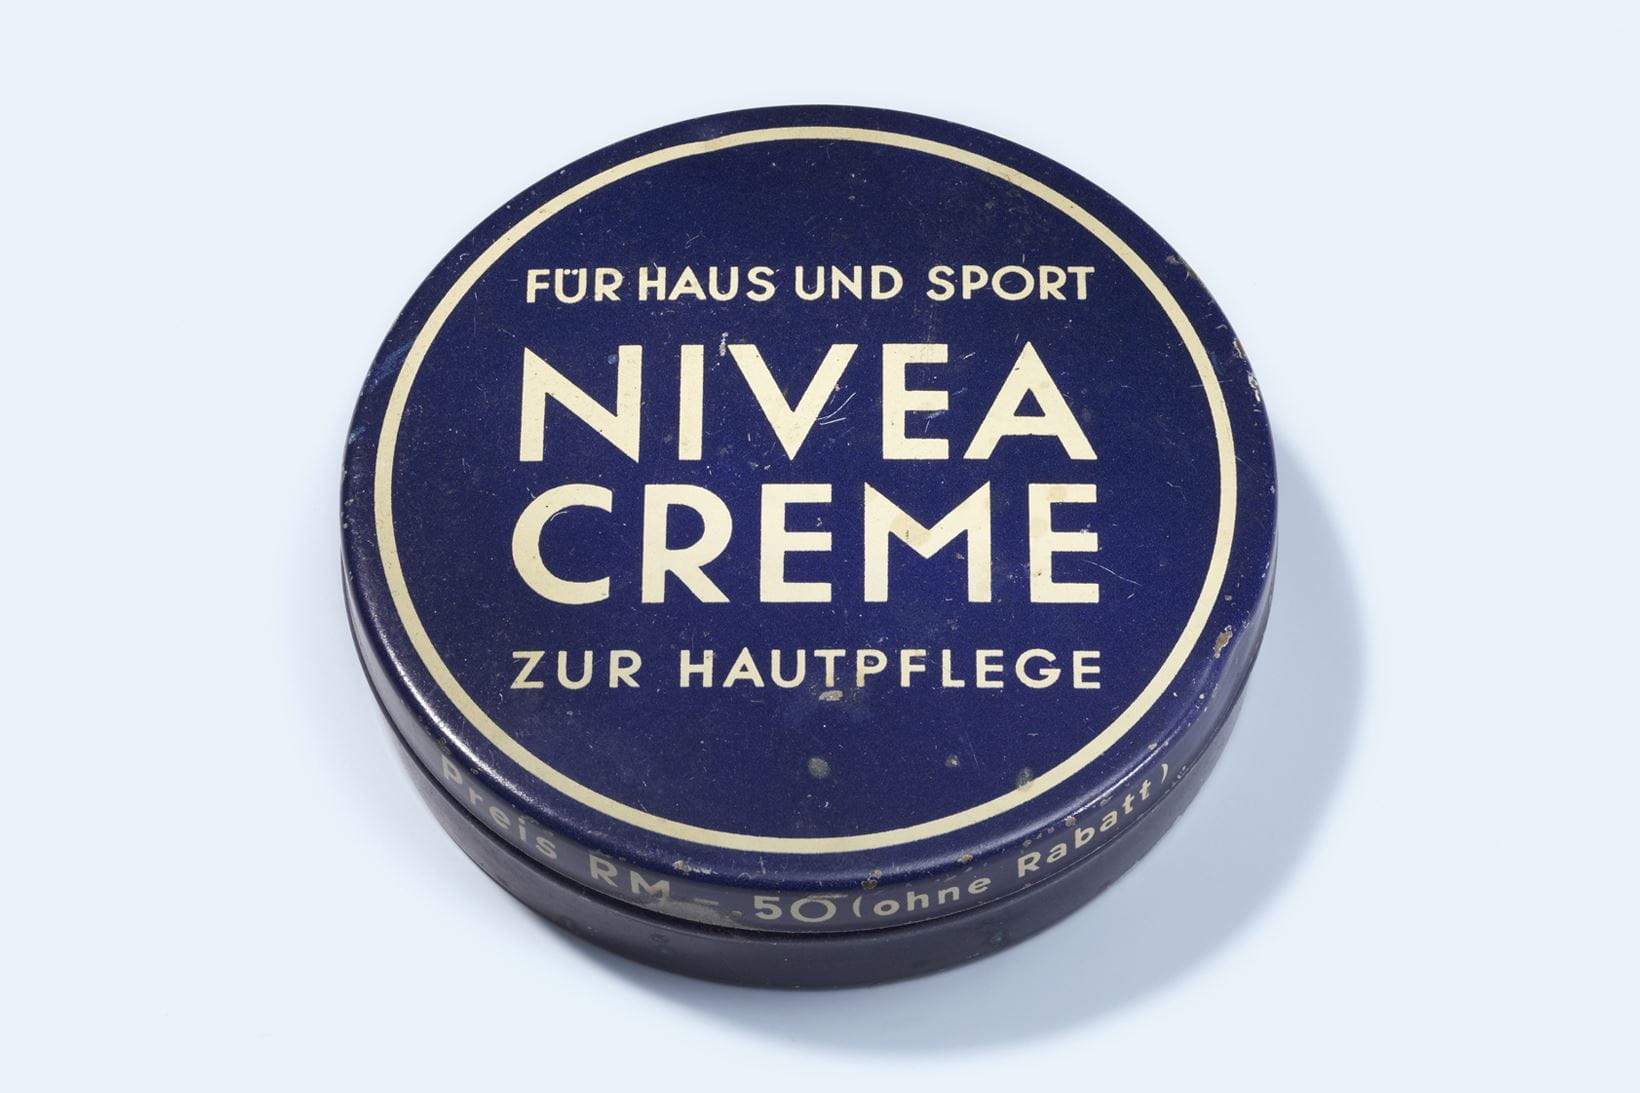 La crème NIVEA en 1935